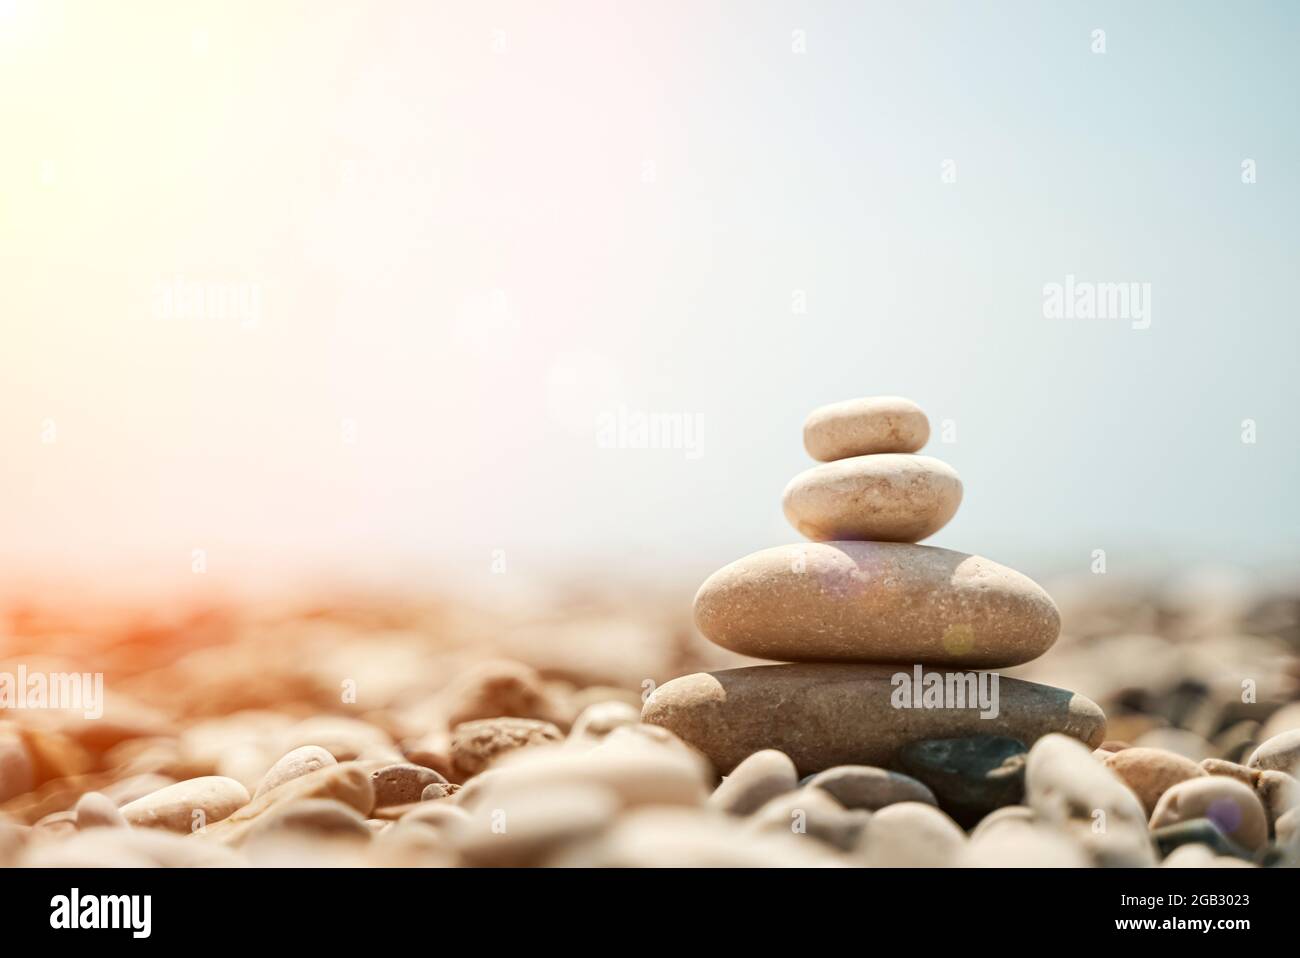 Pietre Zen sono sfondo. Una piramide di pietre di ciottoli sullo sfondo del cielo, del mare e della spiaggia. Meditazione, yoga, rilassare la mente e il concetto di relax. Foto di alta qualità Foto Stock